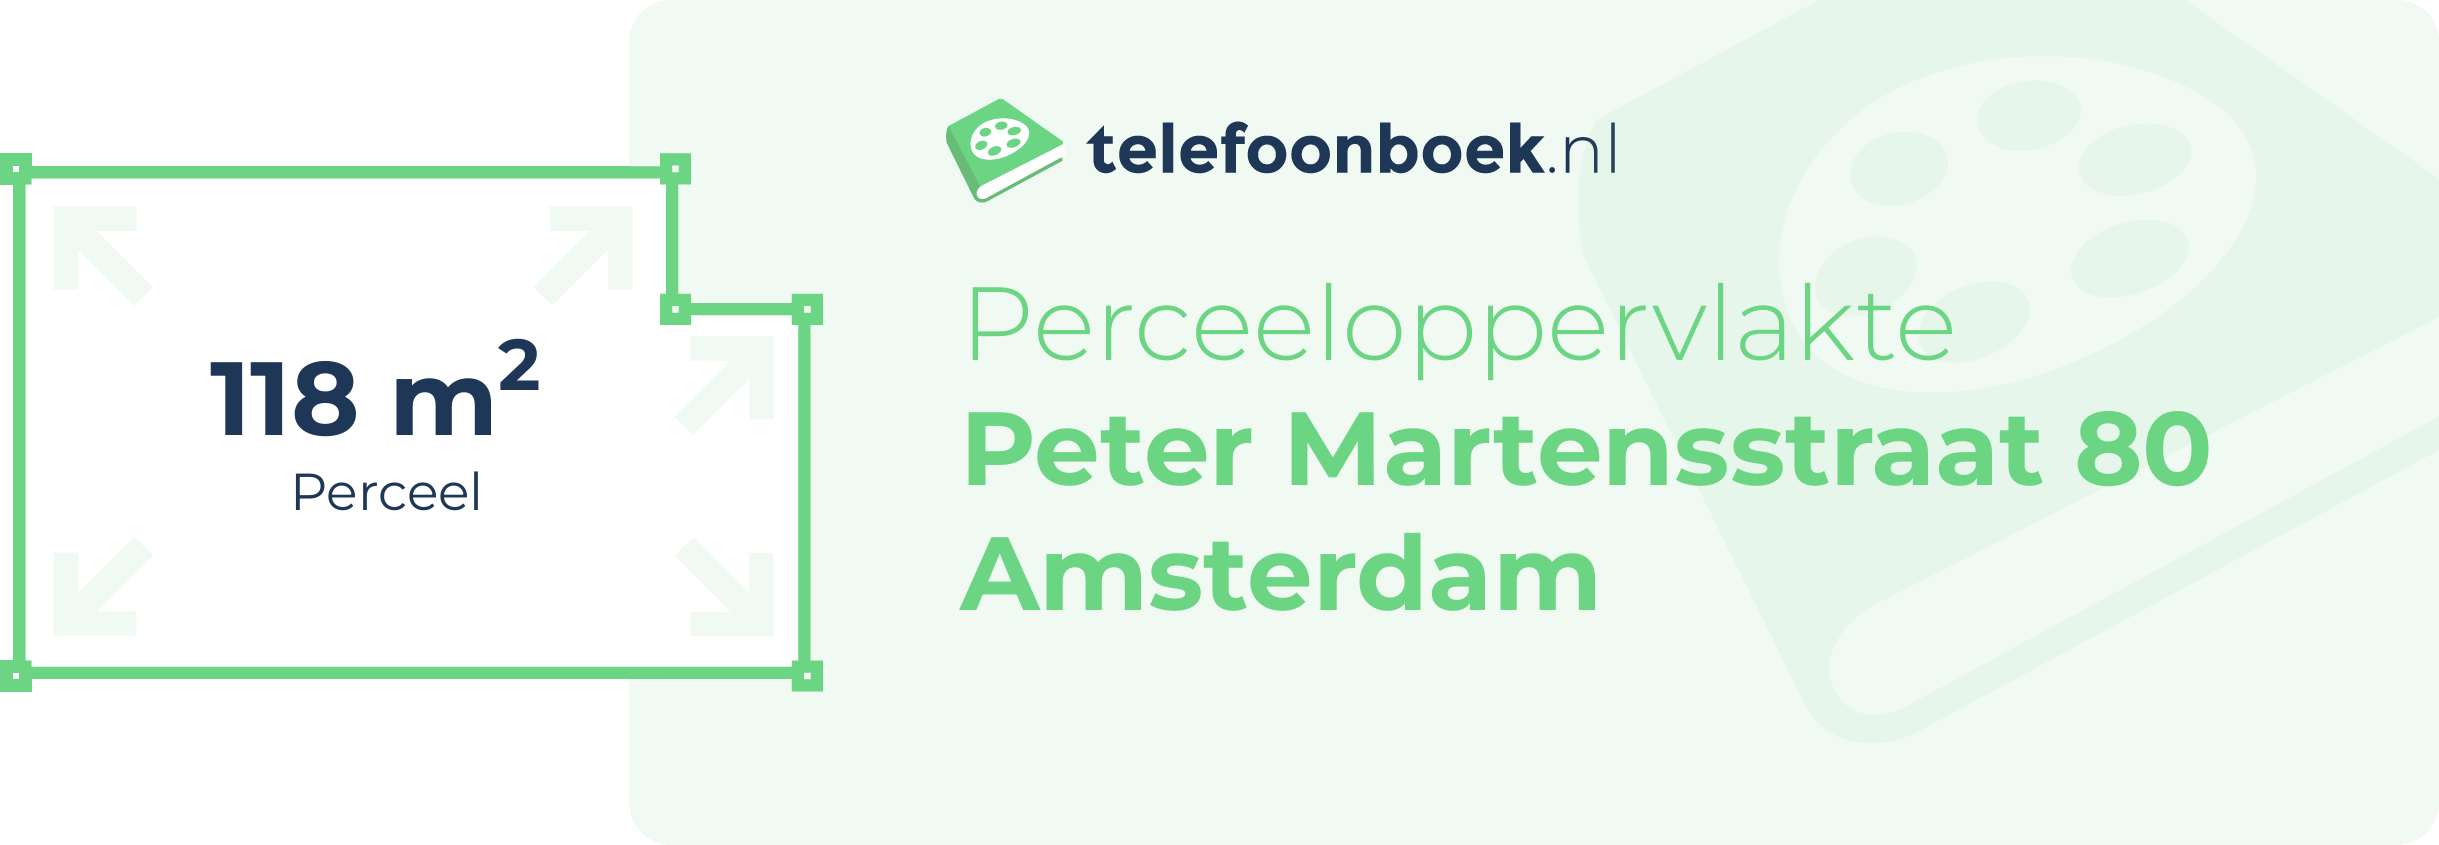 Perceeloppervlakte Peter Martensstraat 80 Amsterdam